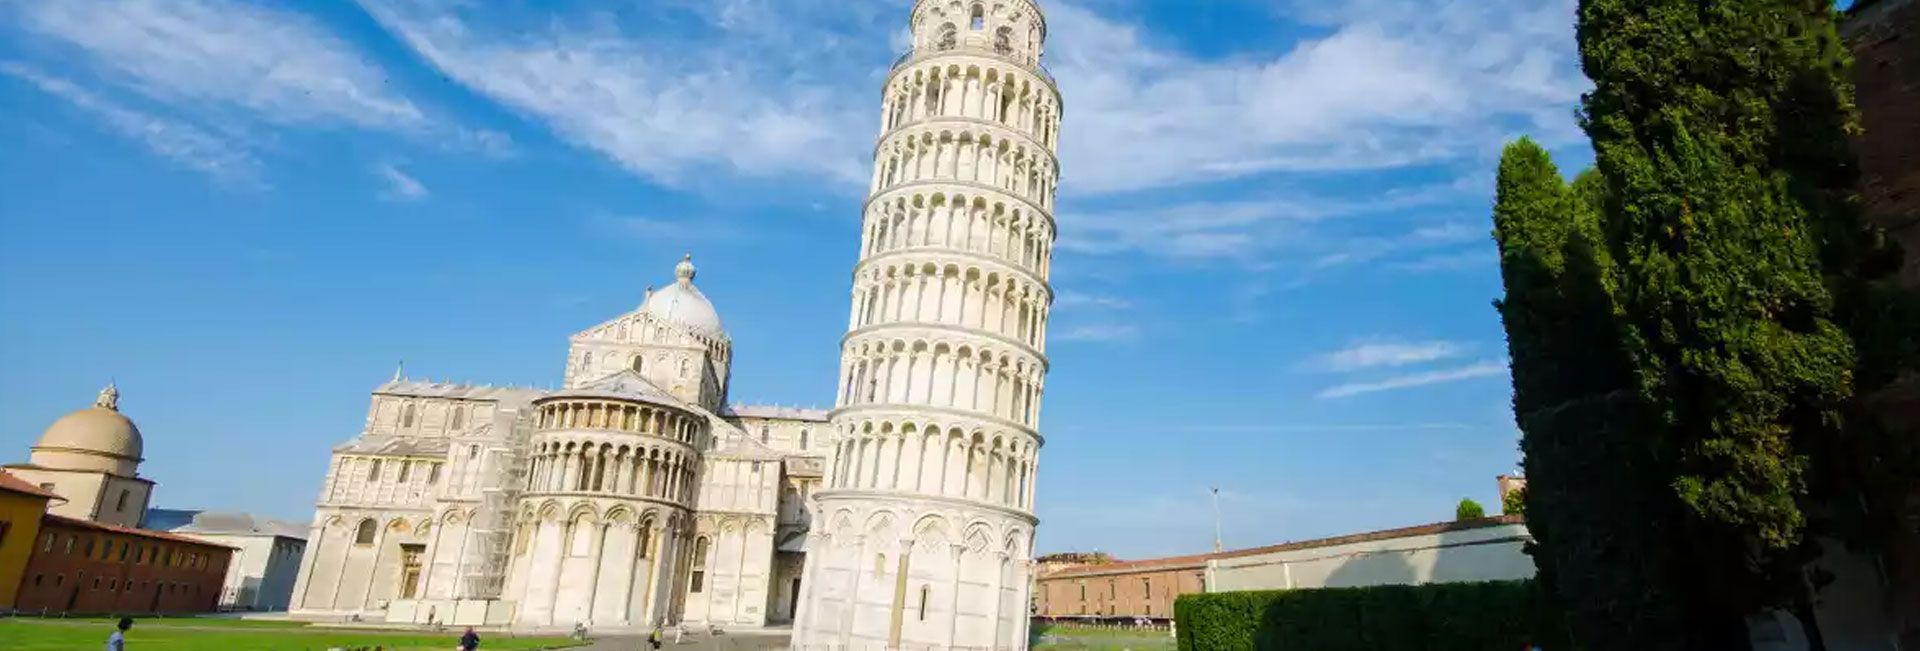 Los misterios detrás de la inclinación de la Torre de Pisa: Descubriendo los secretos de un emblemático monumento italiano